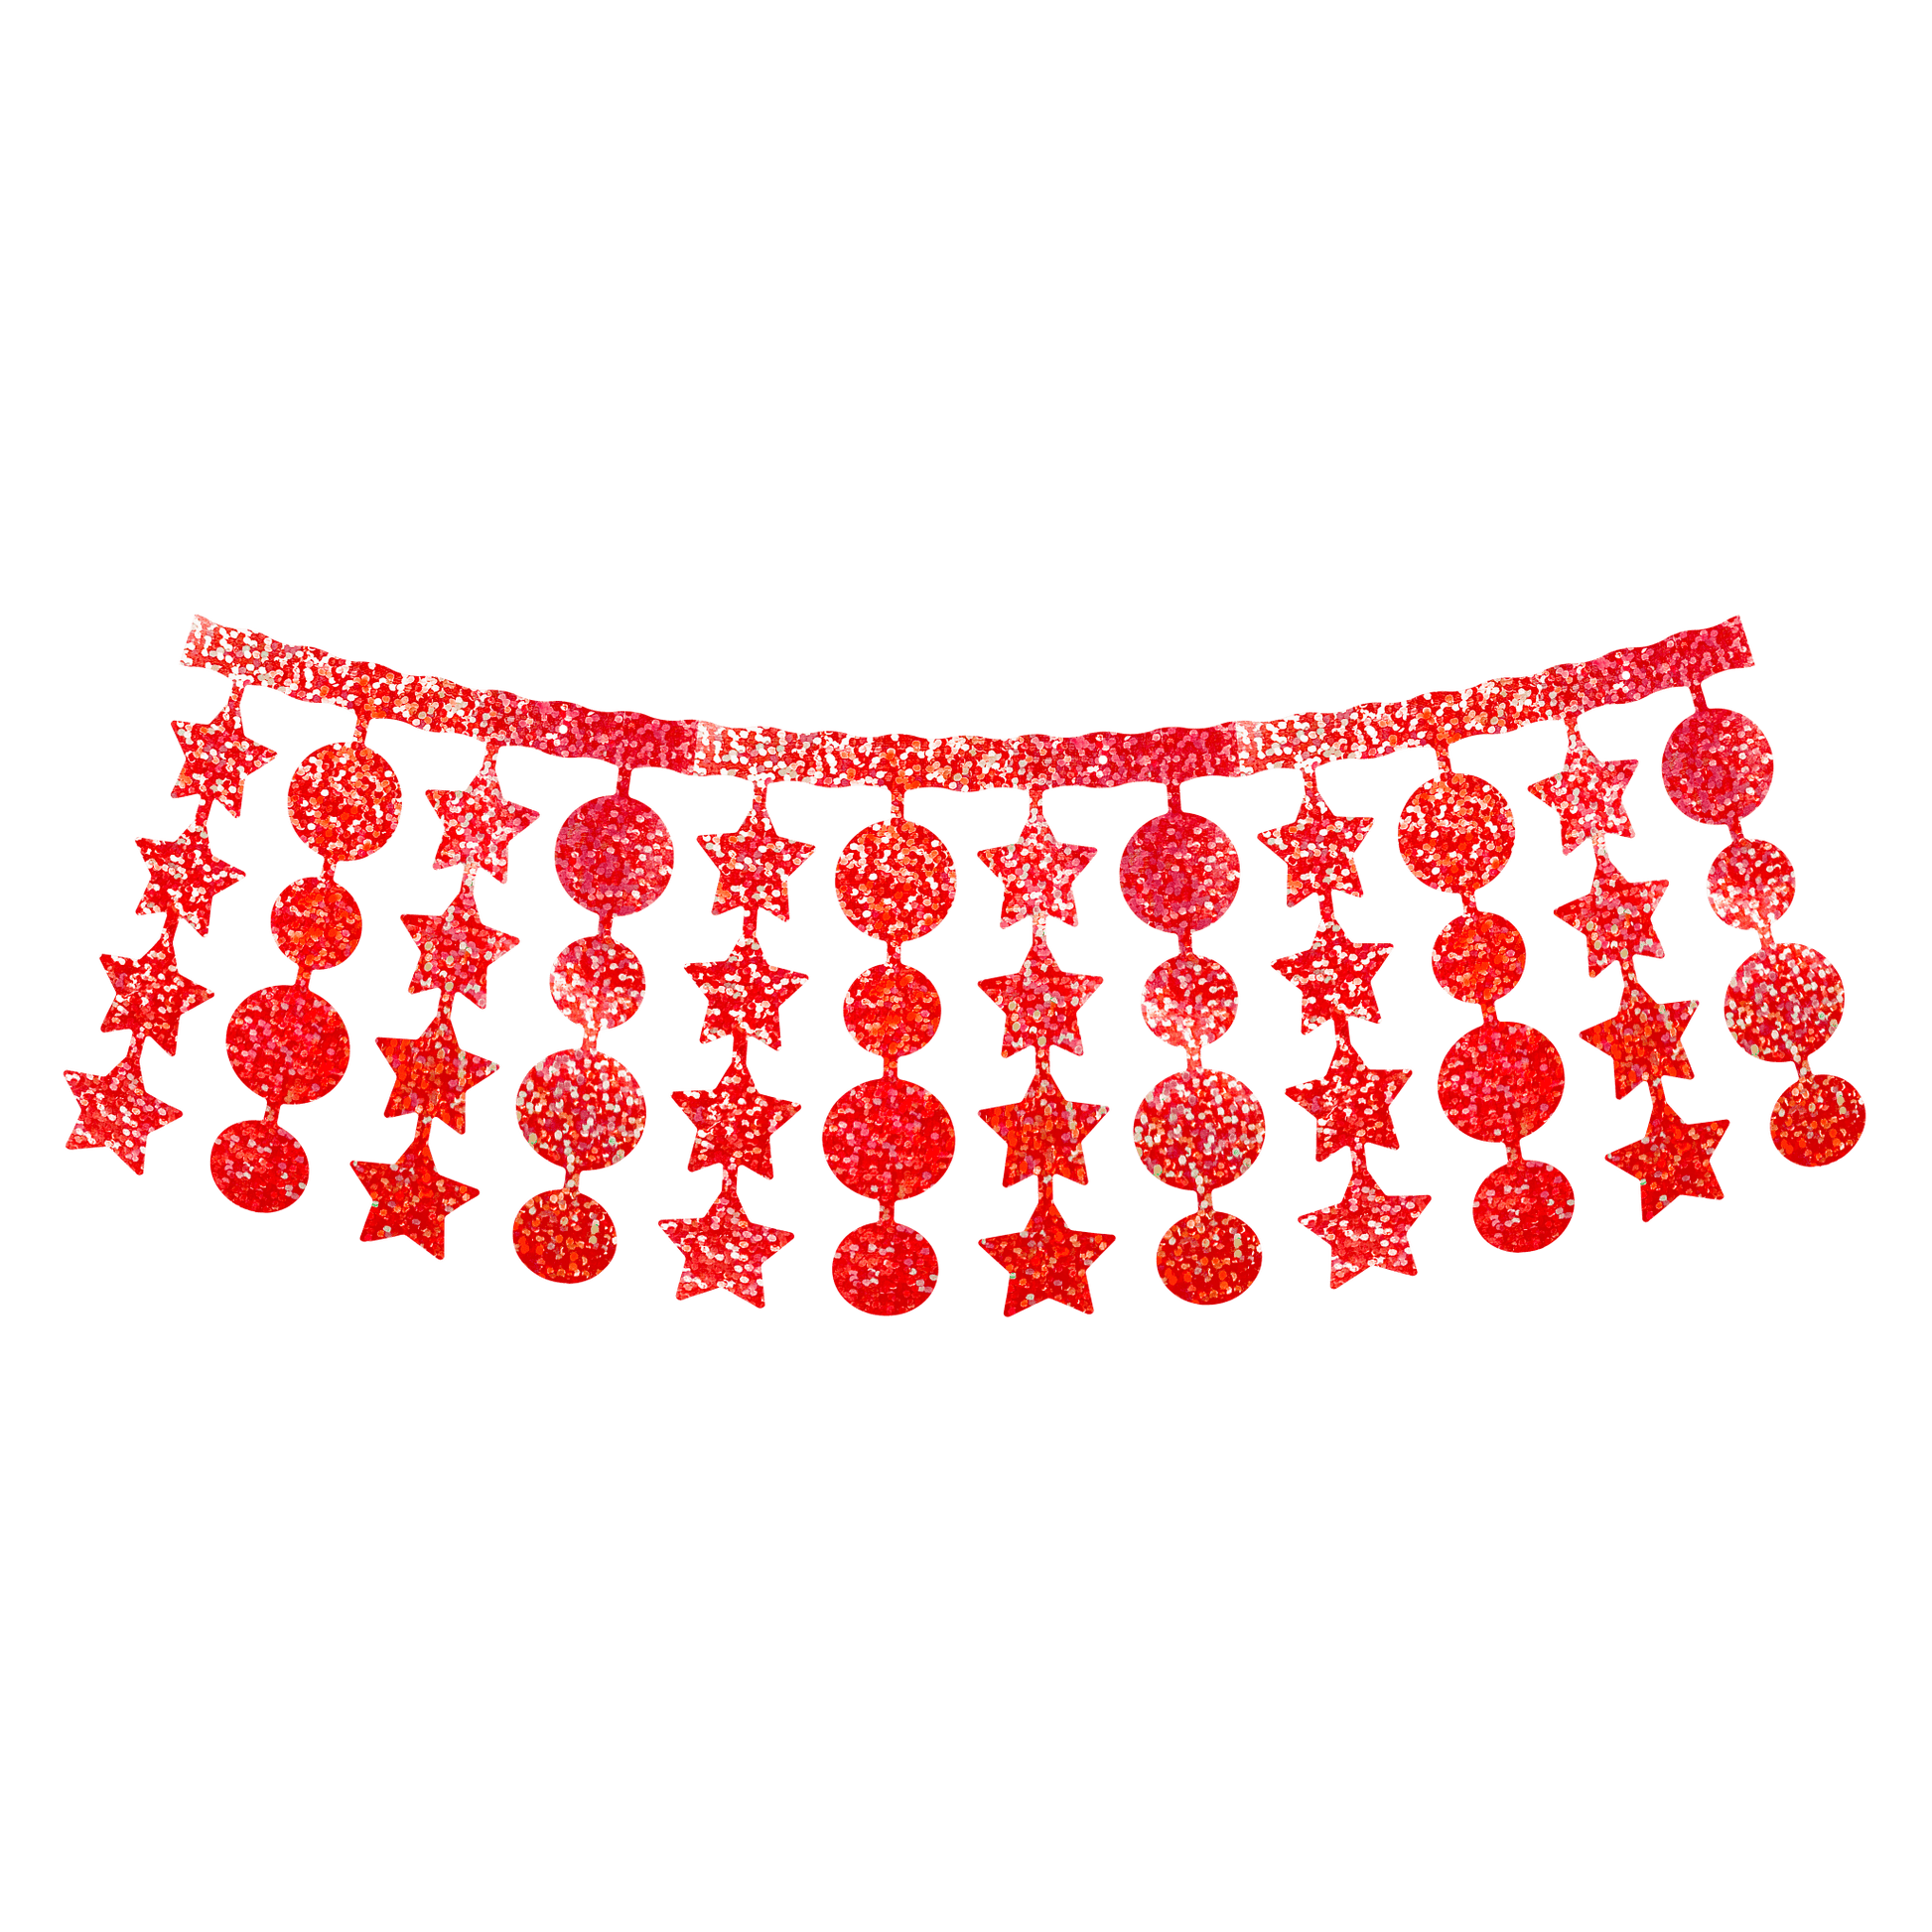 Comemoratio Varal de Plástico 4 m Natal Metalizado Glitter Estrela e Bola Vermelho